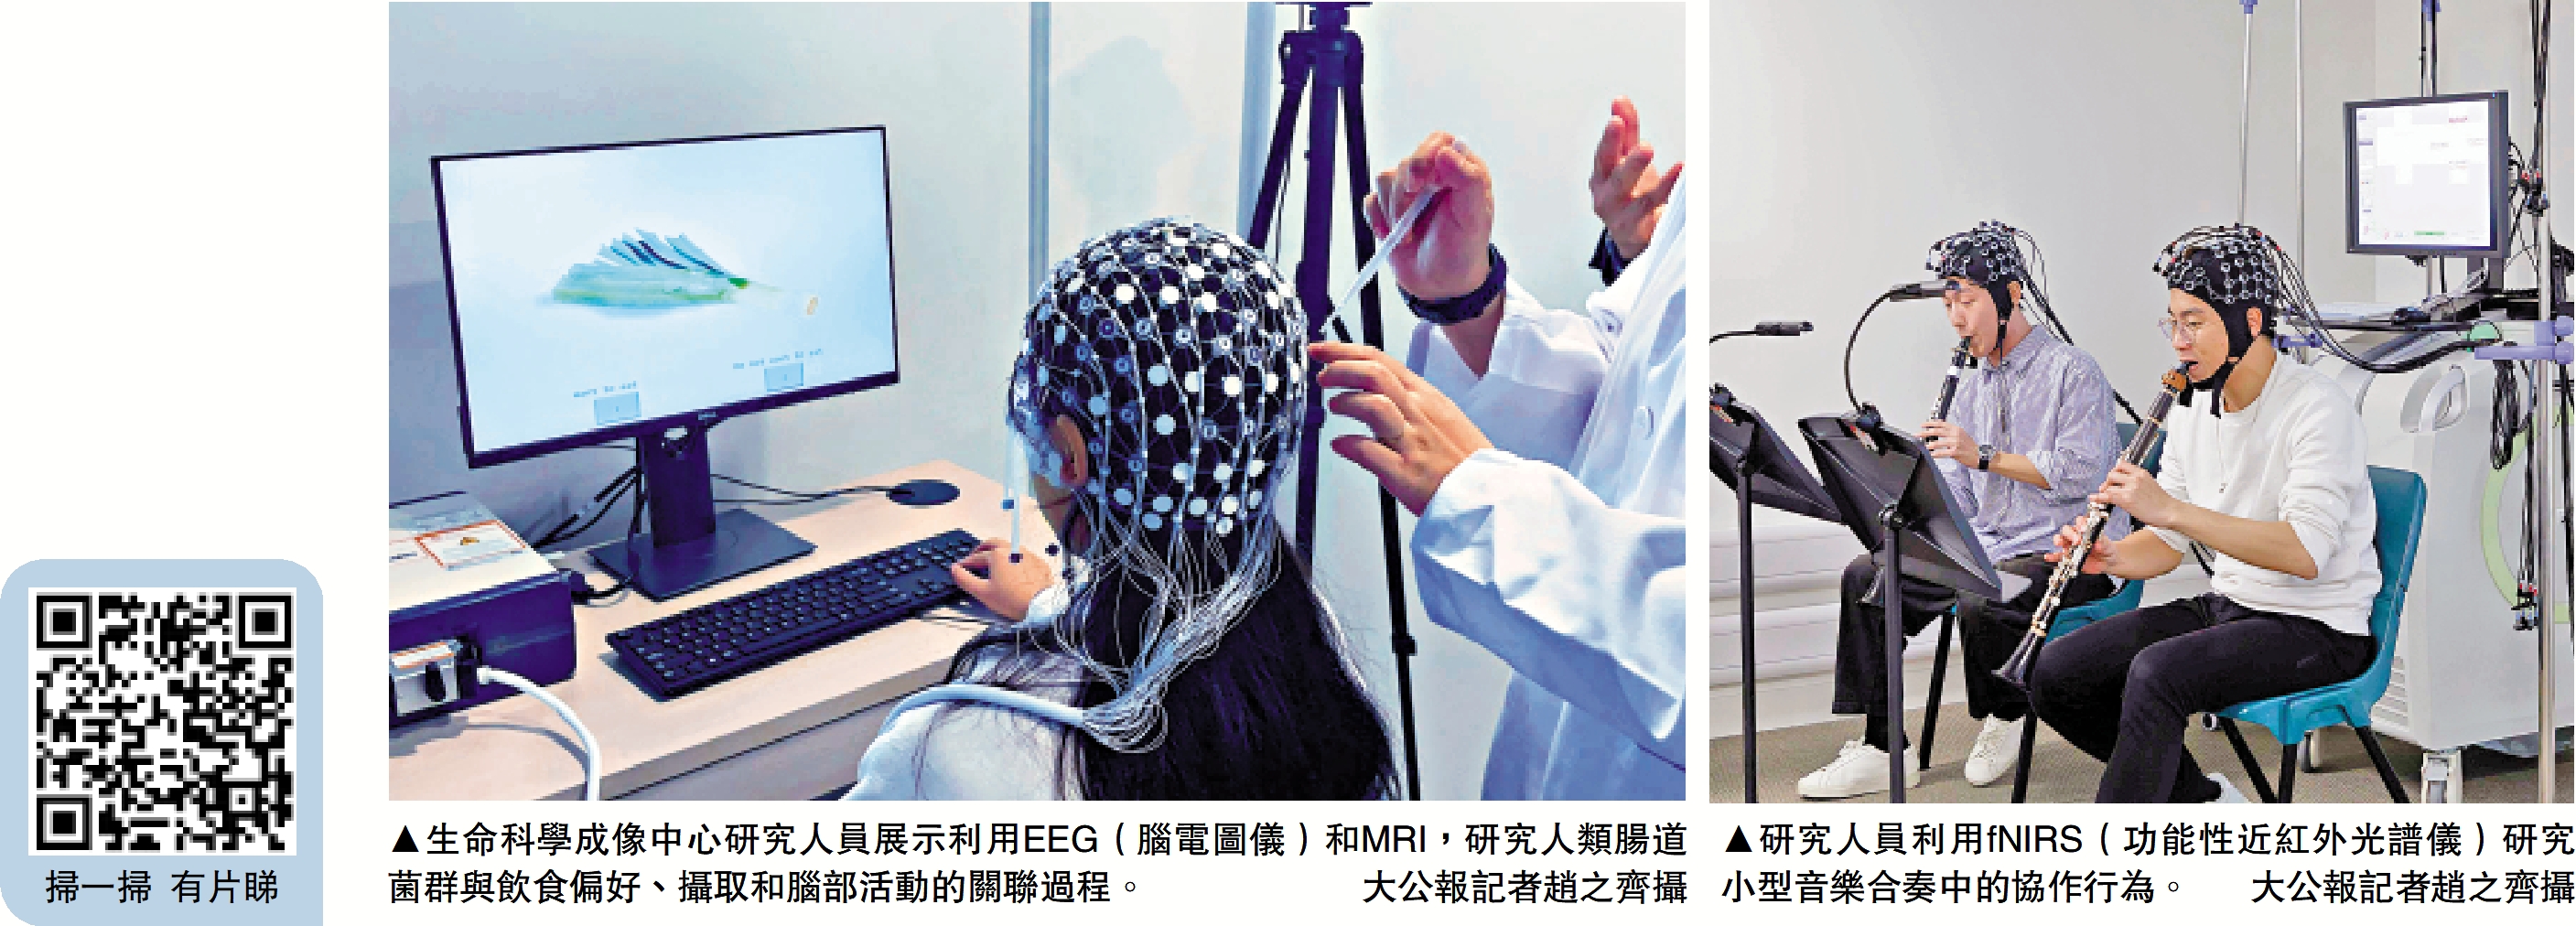 　　左圖：生命科學成像中心研究人員展示利用EEG（腦電圖儀）和MRI，研究人類腸道菌群與飲食偏好、攝取和腦部活動的關聯過程。\大公報記者趙之齊攝；右圖：研究人員利用fNIRS（功能性近紅外光譜儀）研究小型音樂合奏中的協作行為。\大公報記者趙之齊攝